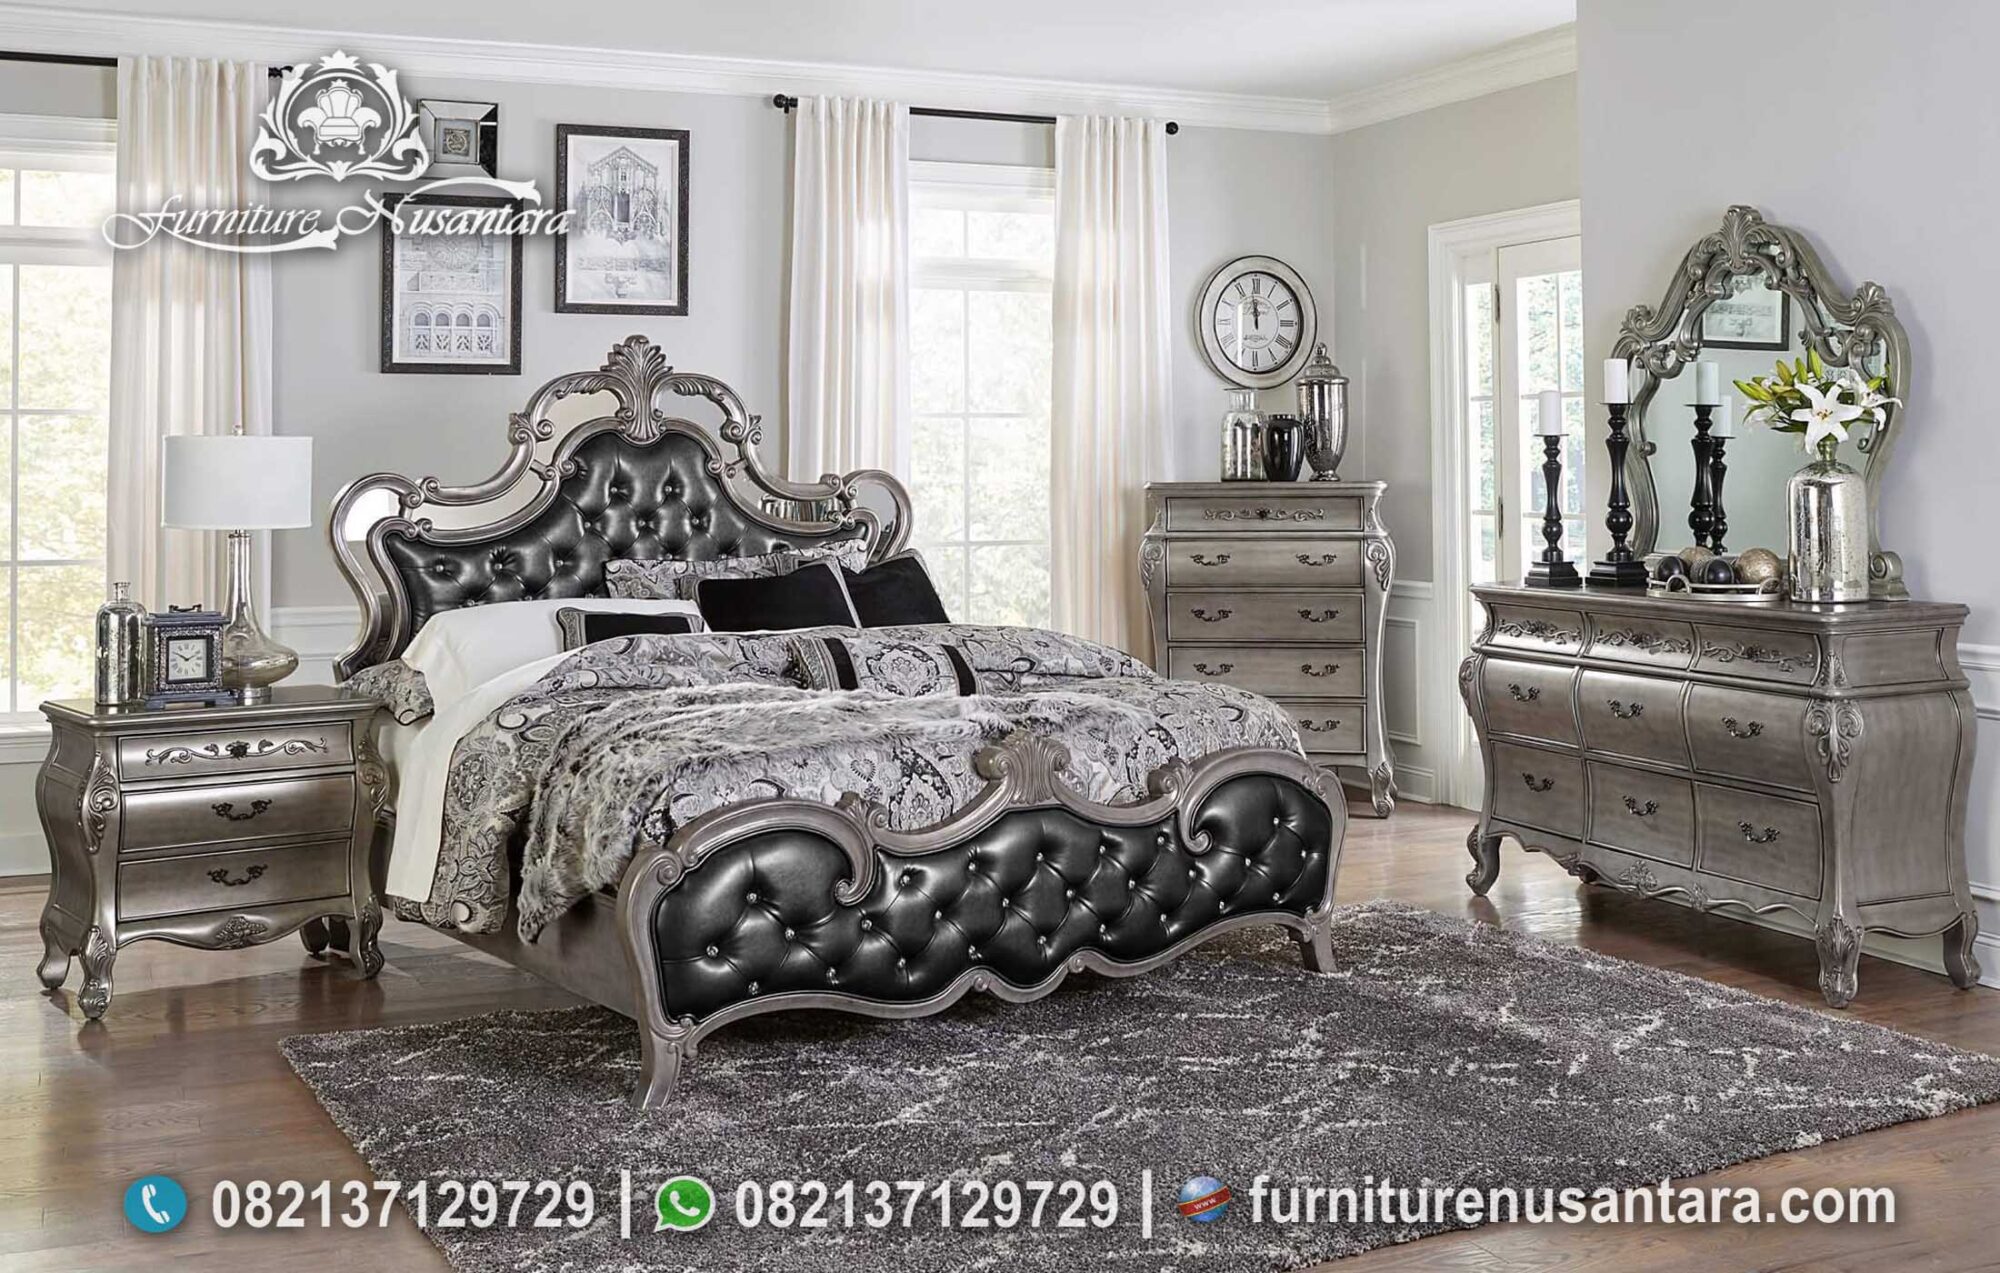 Desain Kamar Silver Cantik Mewah KS-141, Furniture Nusantara